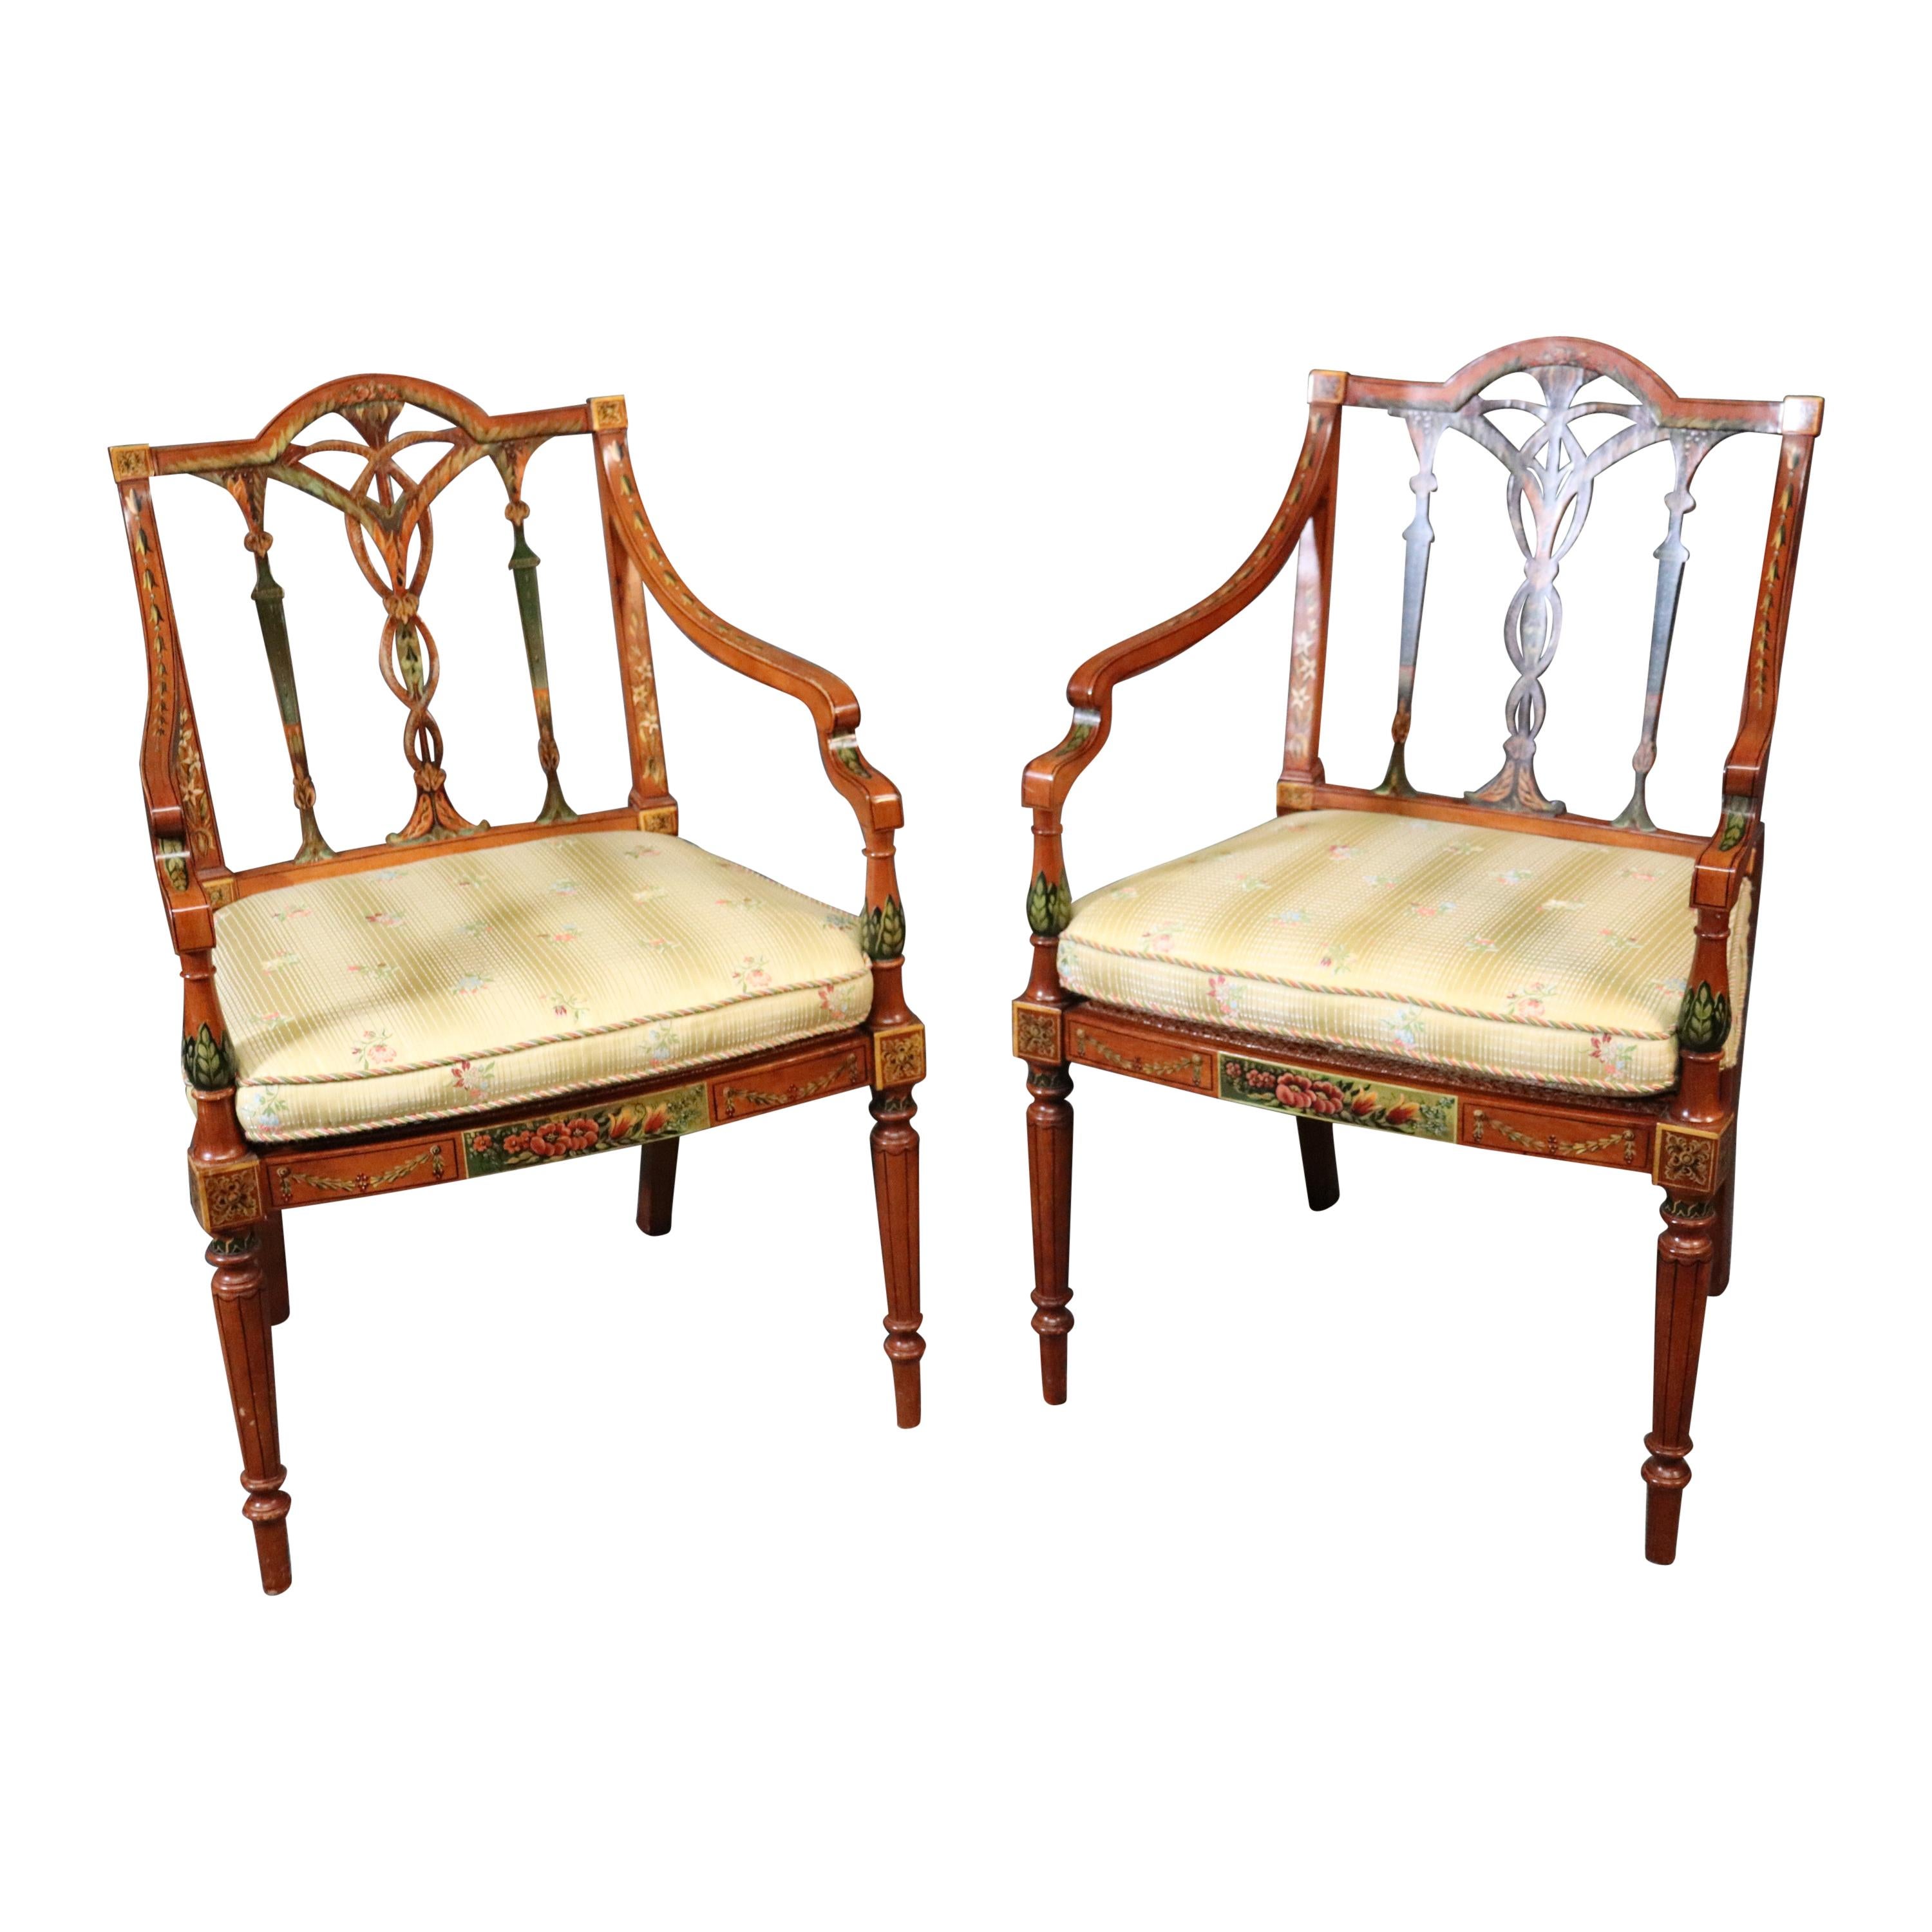 Paire de fauteuils anglais de style Adams en bois de citronnier peint et décoré de sièges en rotin